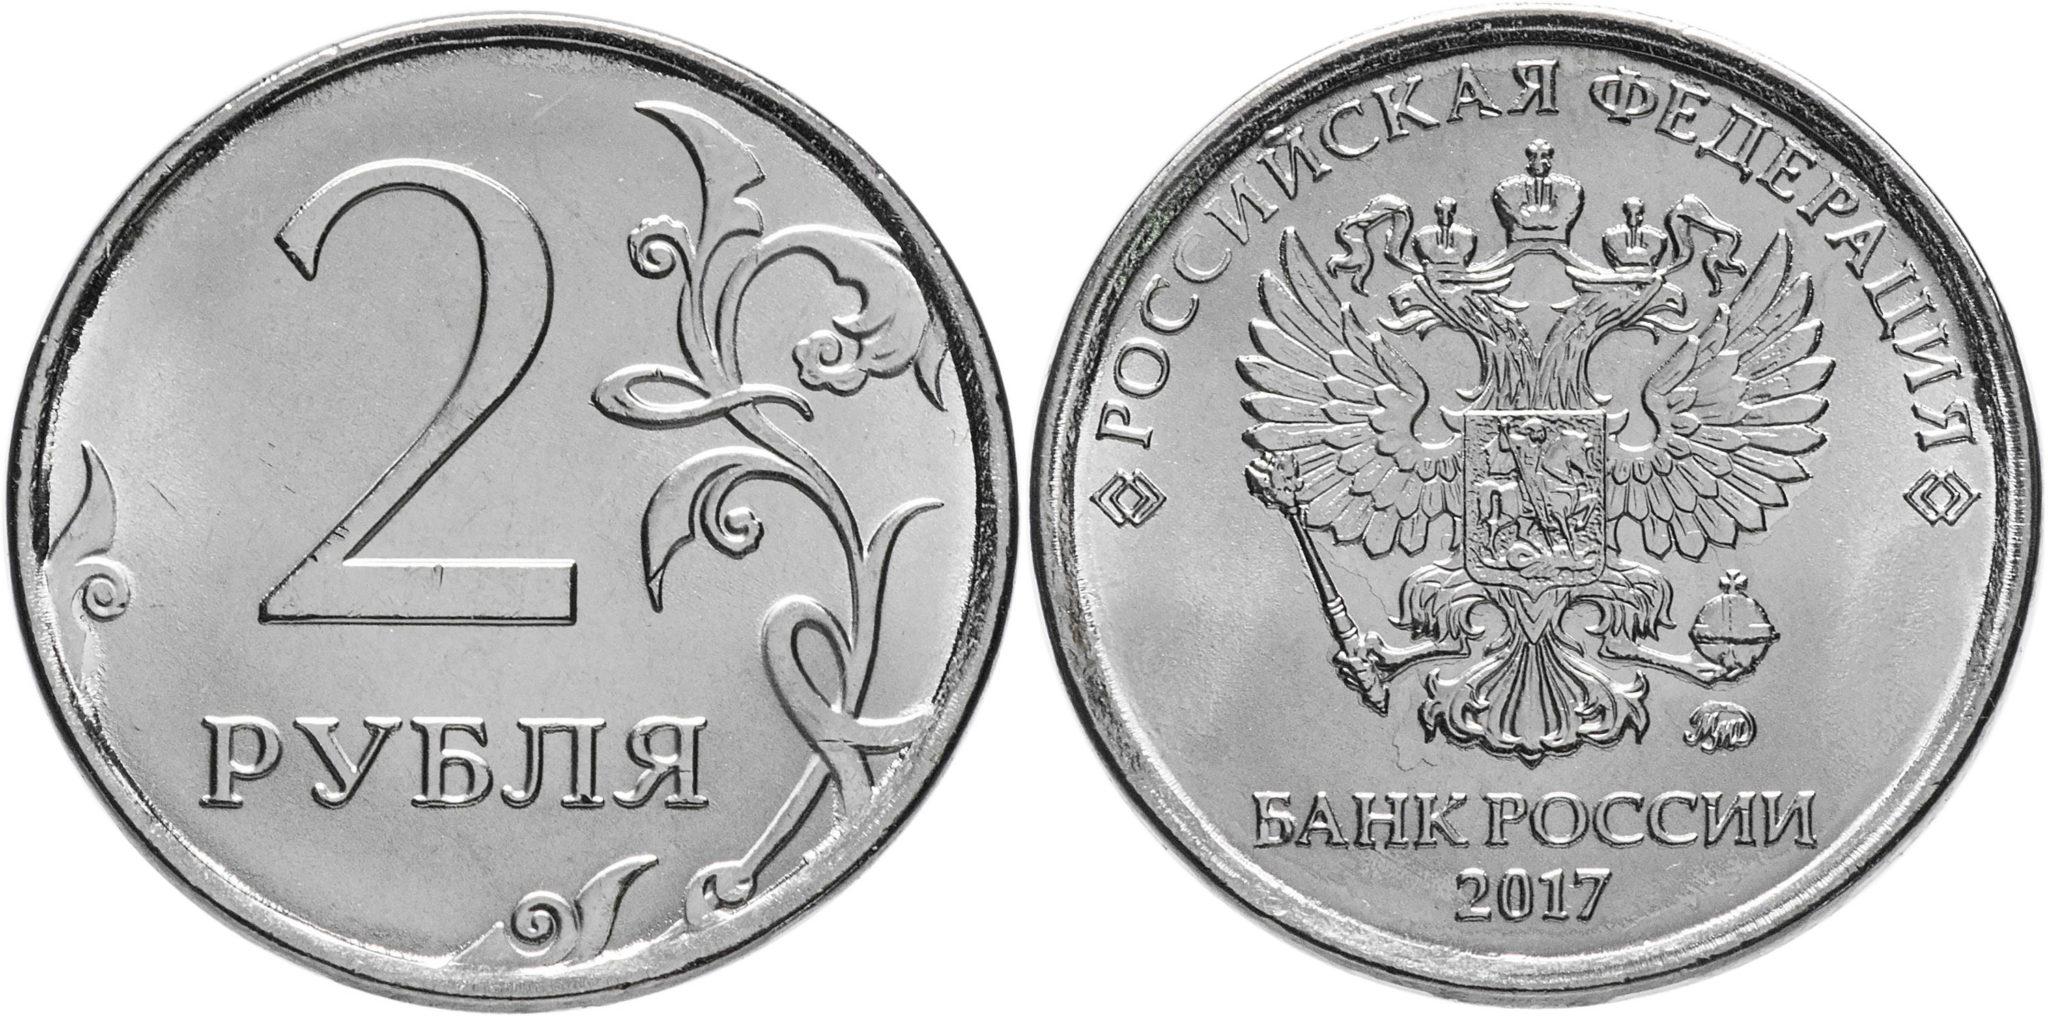 Цены на монеты 2017 года